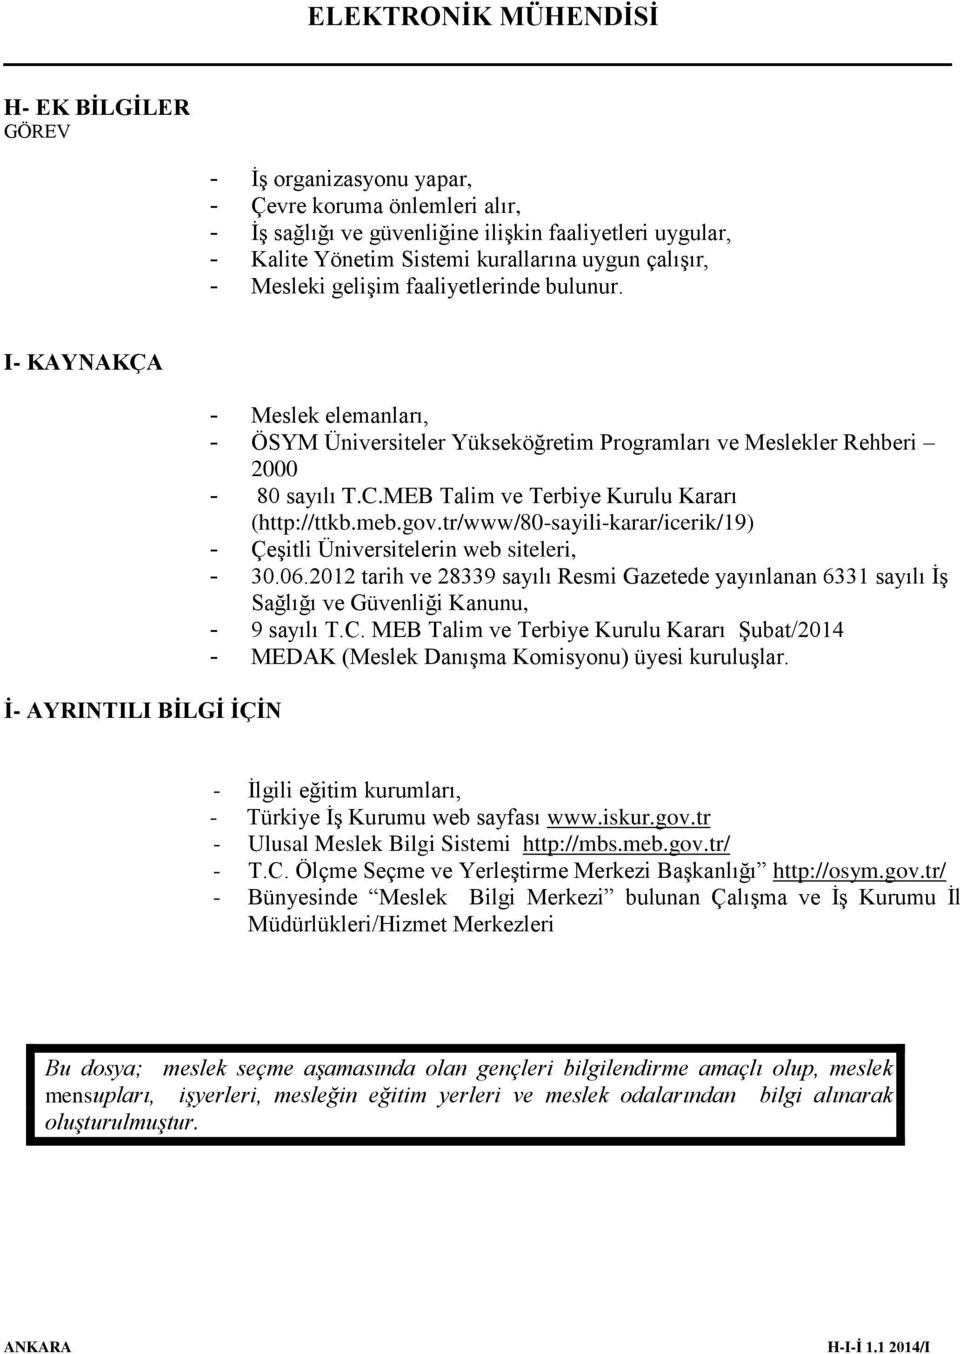 MEB Talim ve Terbiye Kurulu Kararı (http://ttkb.meb.gov.tr/www/80-sayili-karar/icerik/19) - Çeşitli Üniversitelerin web siteleri, - 30.06.